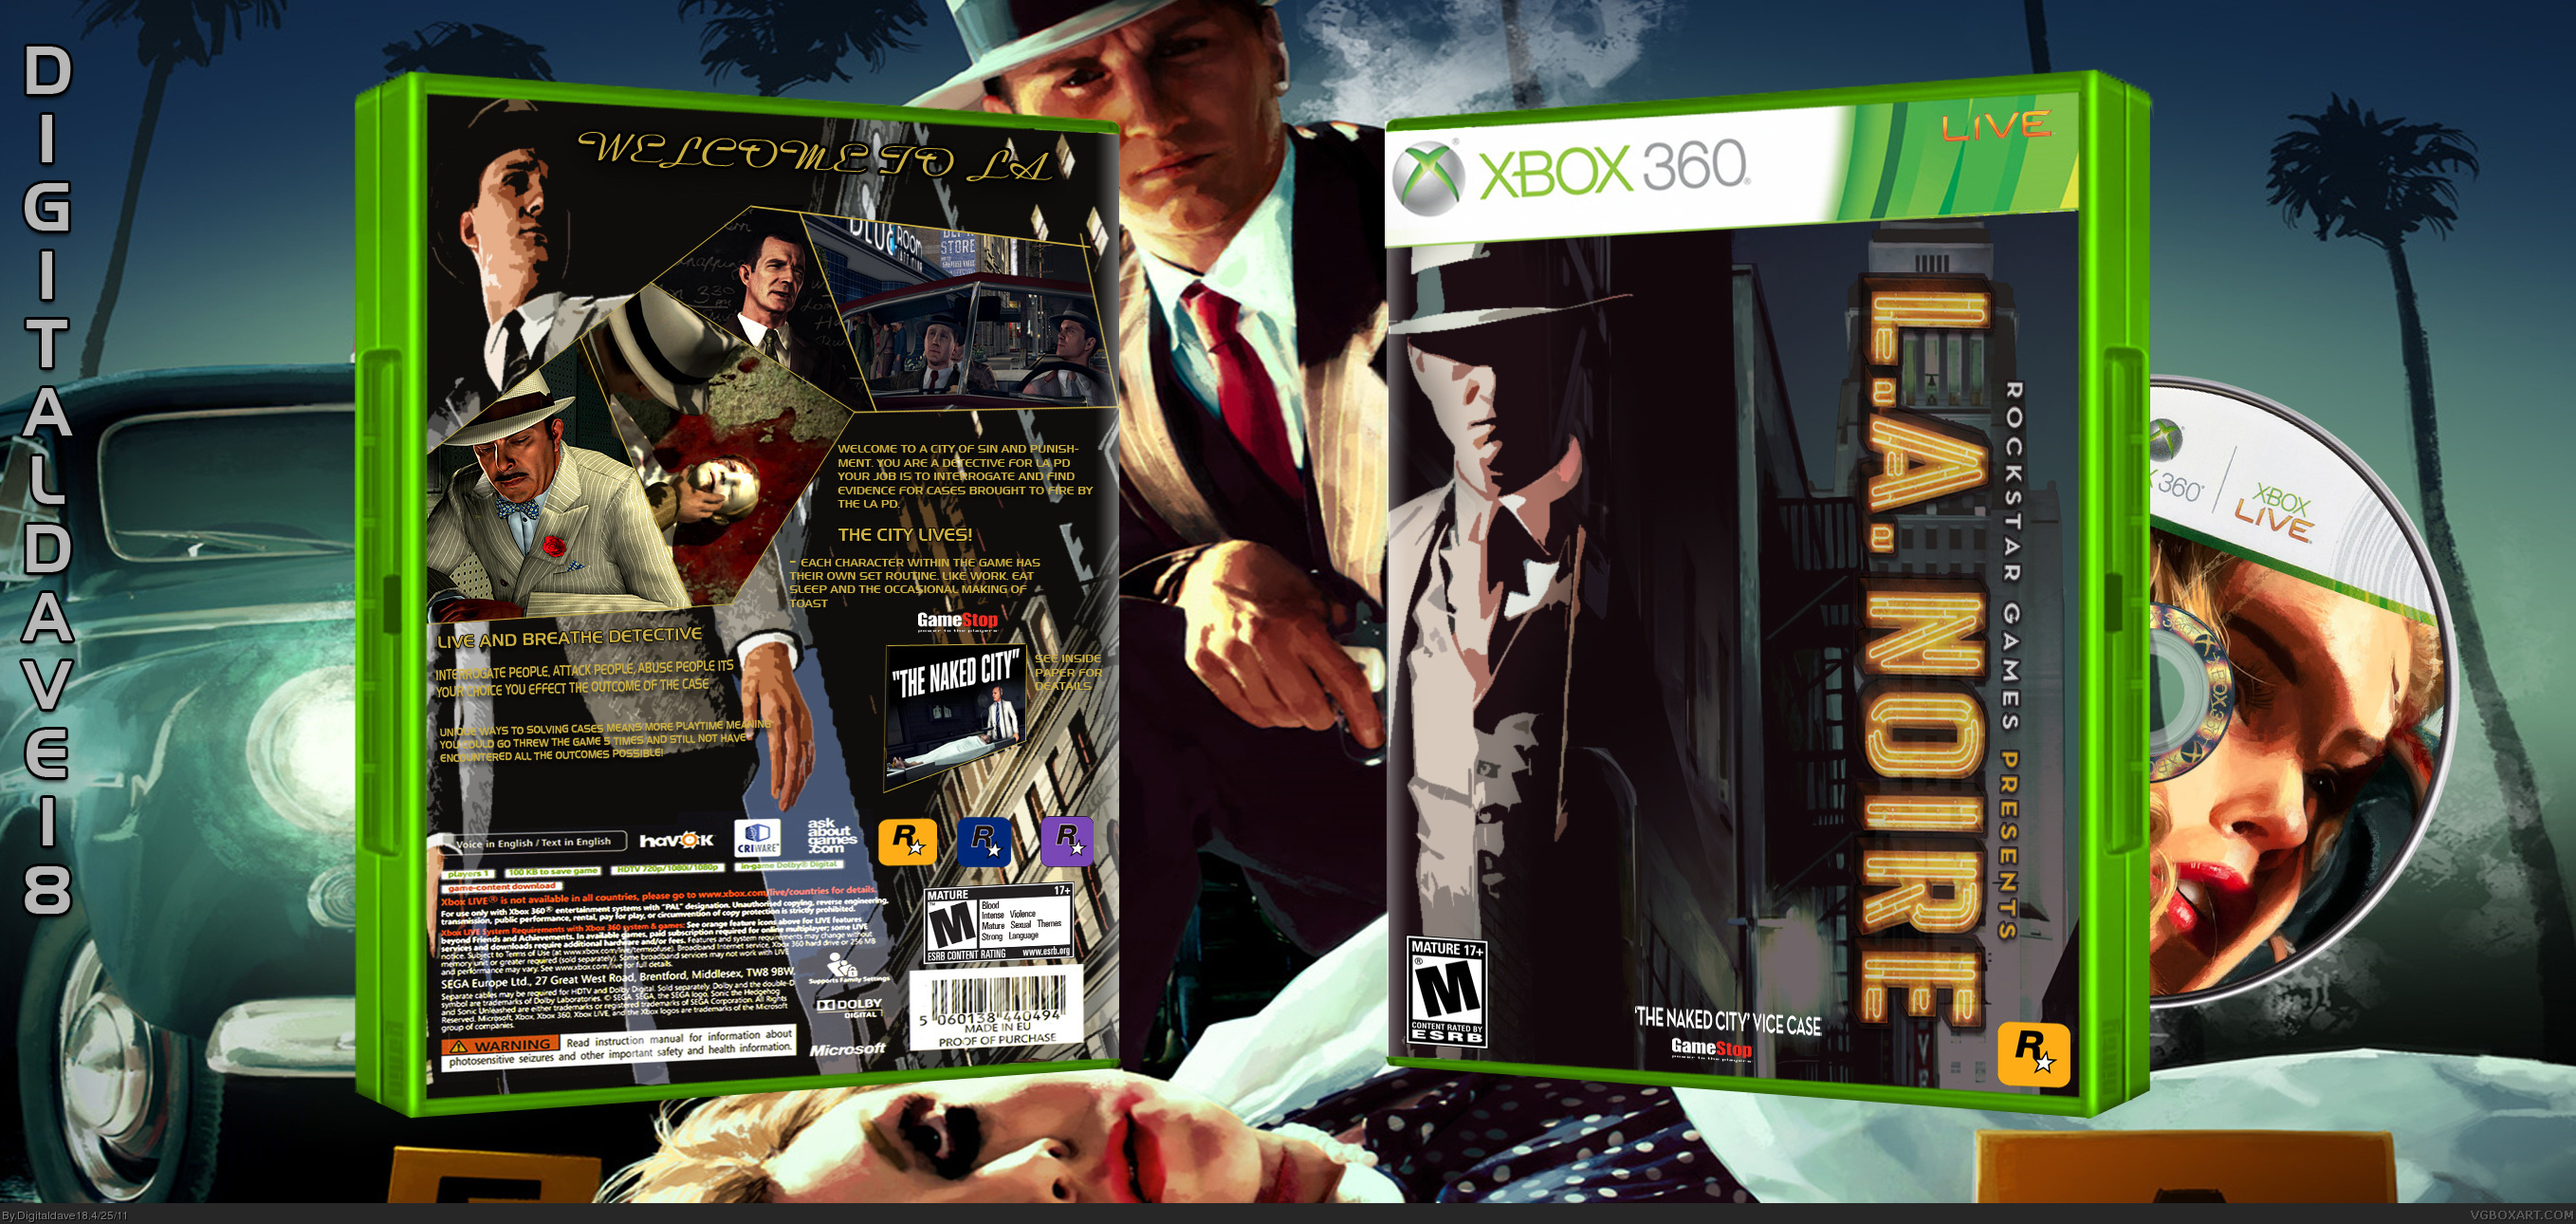 L.A. Noire box cover